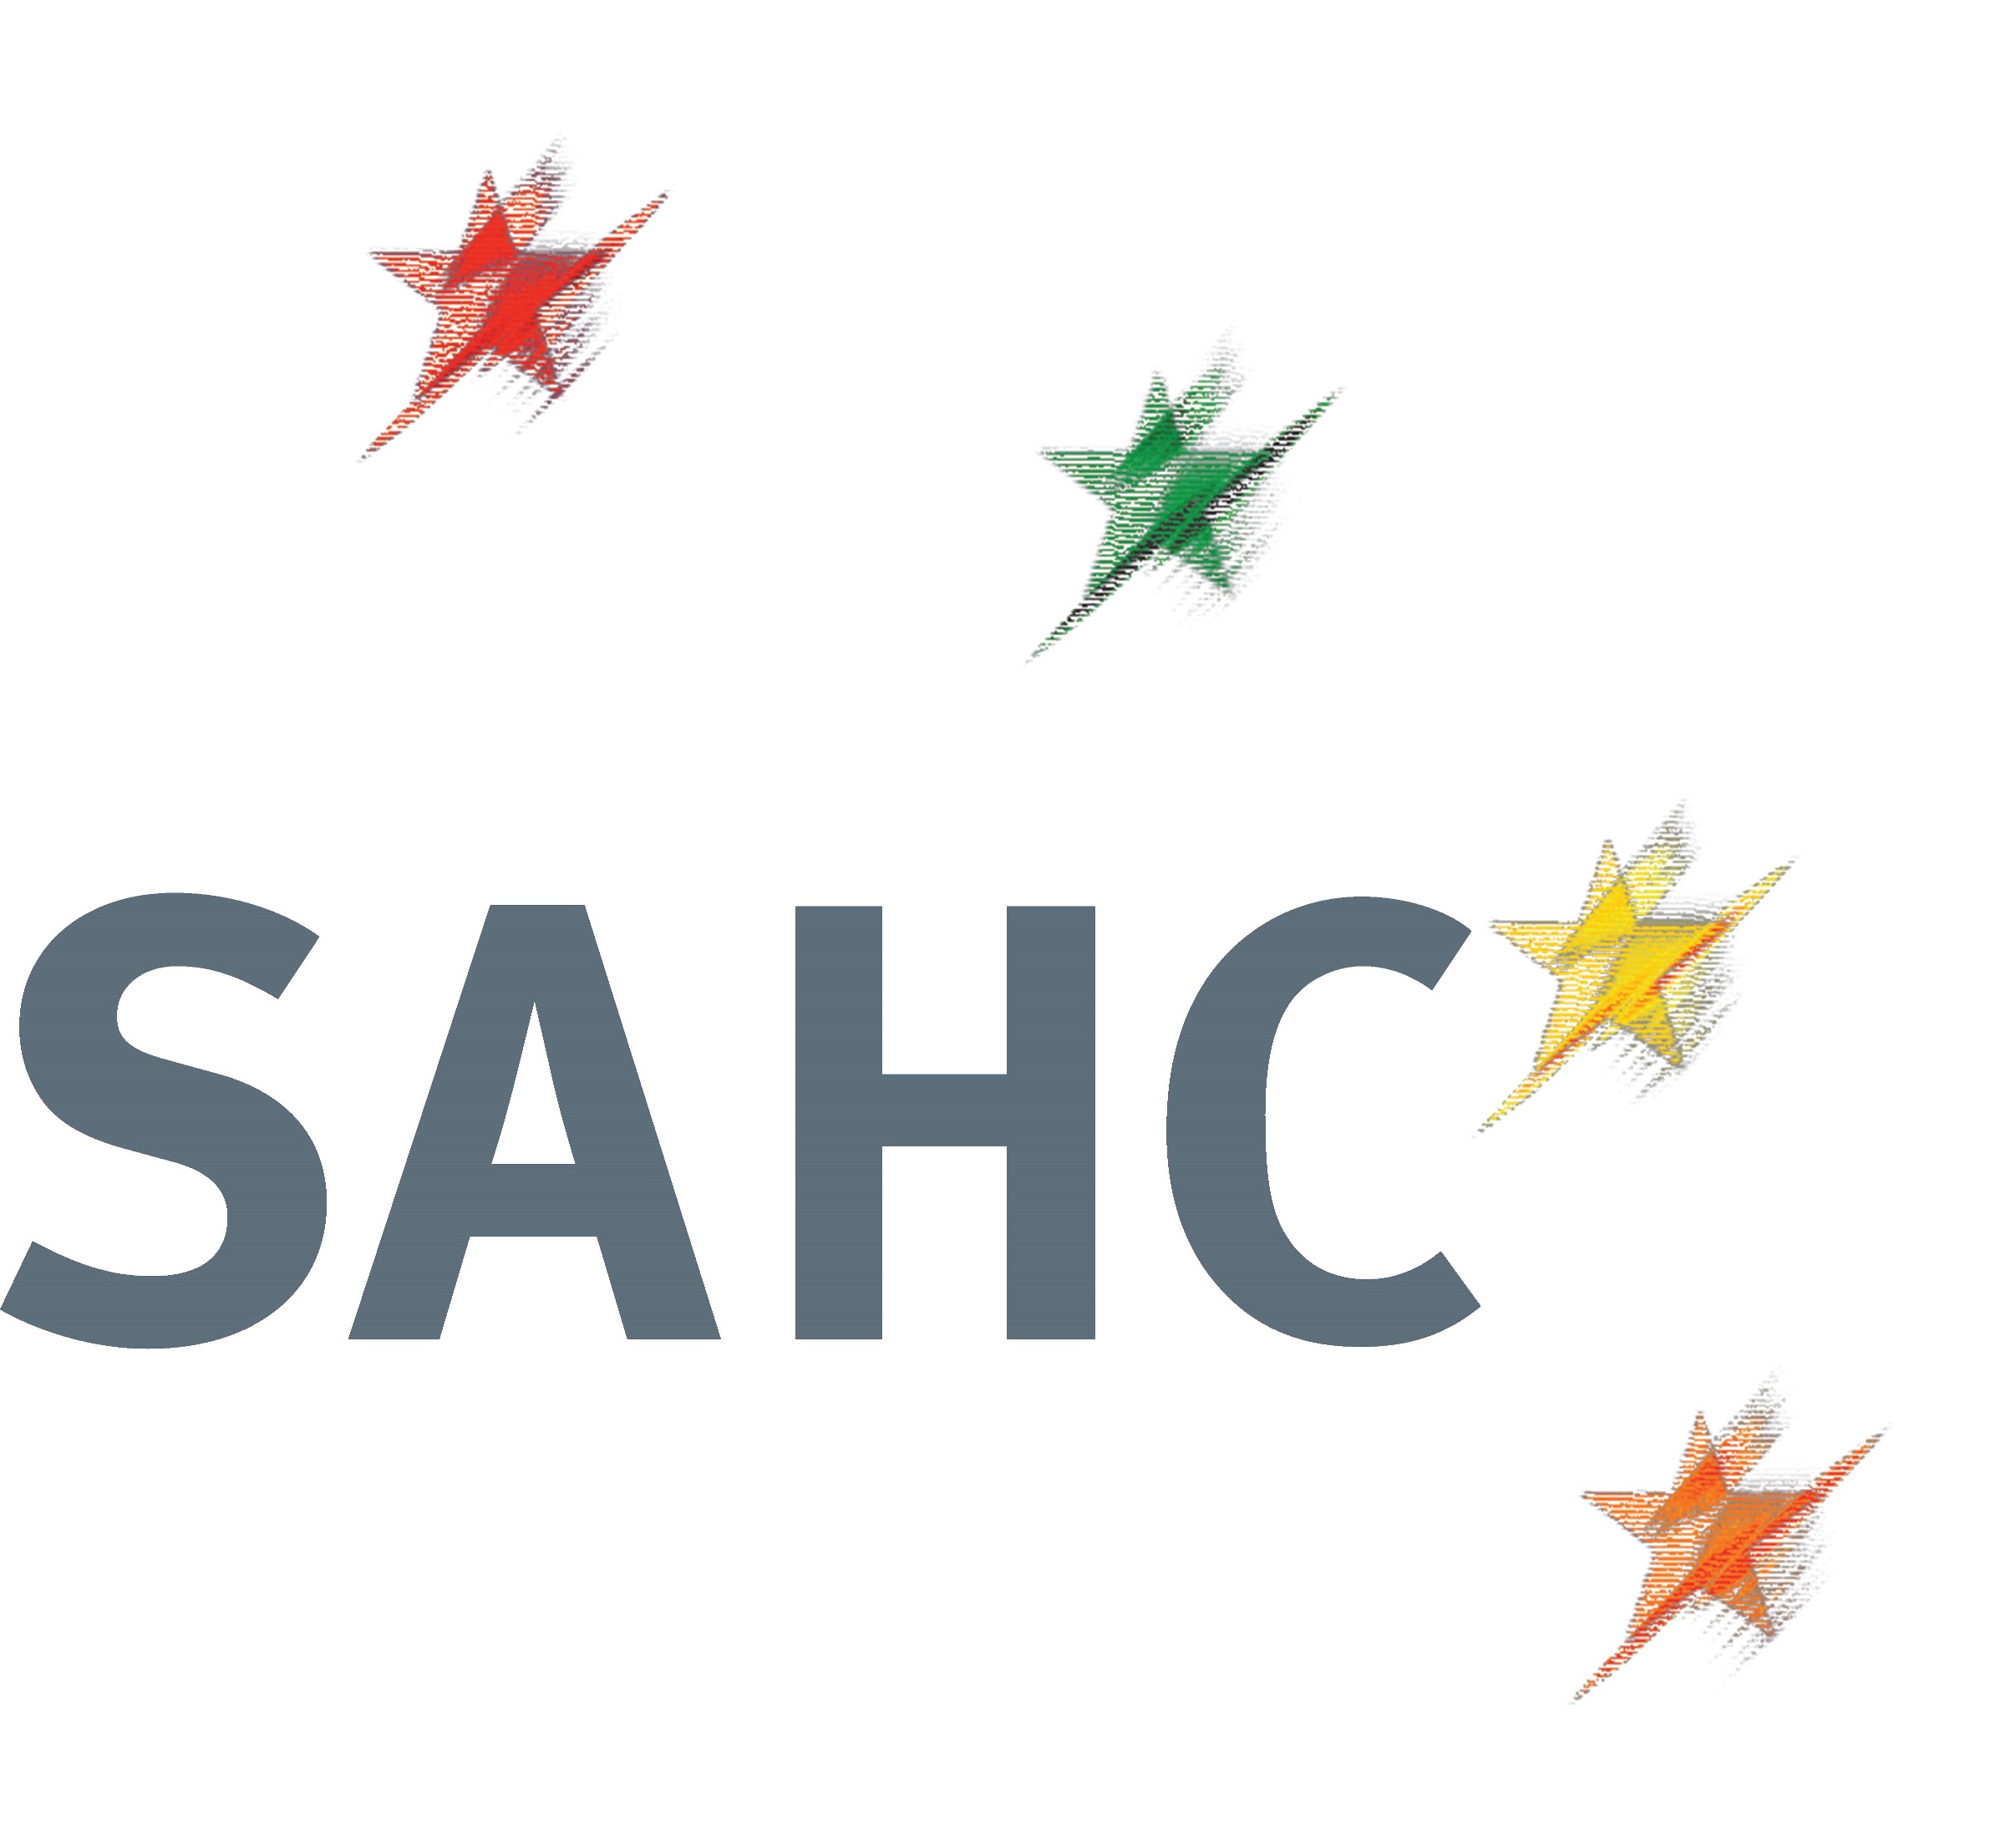 SAHC logo